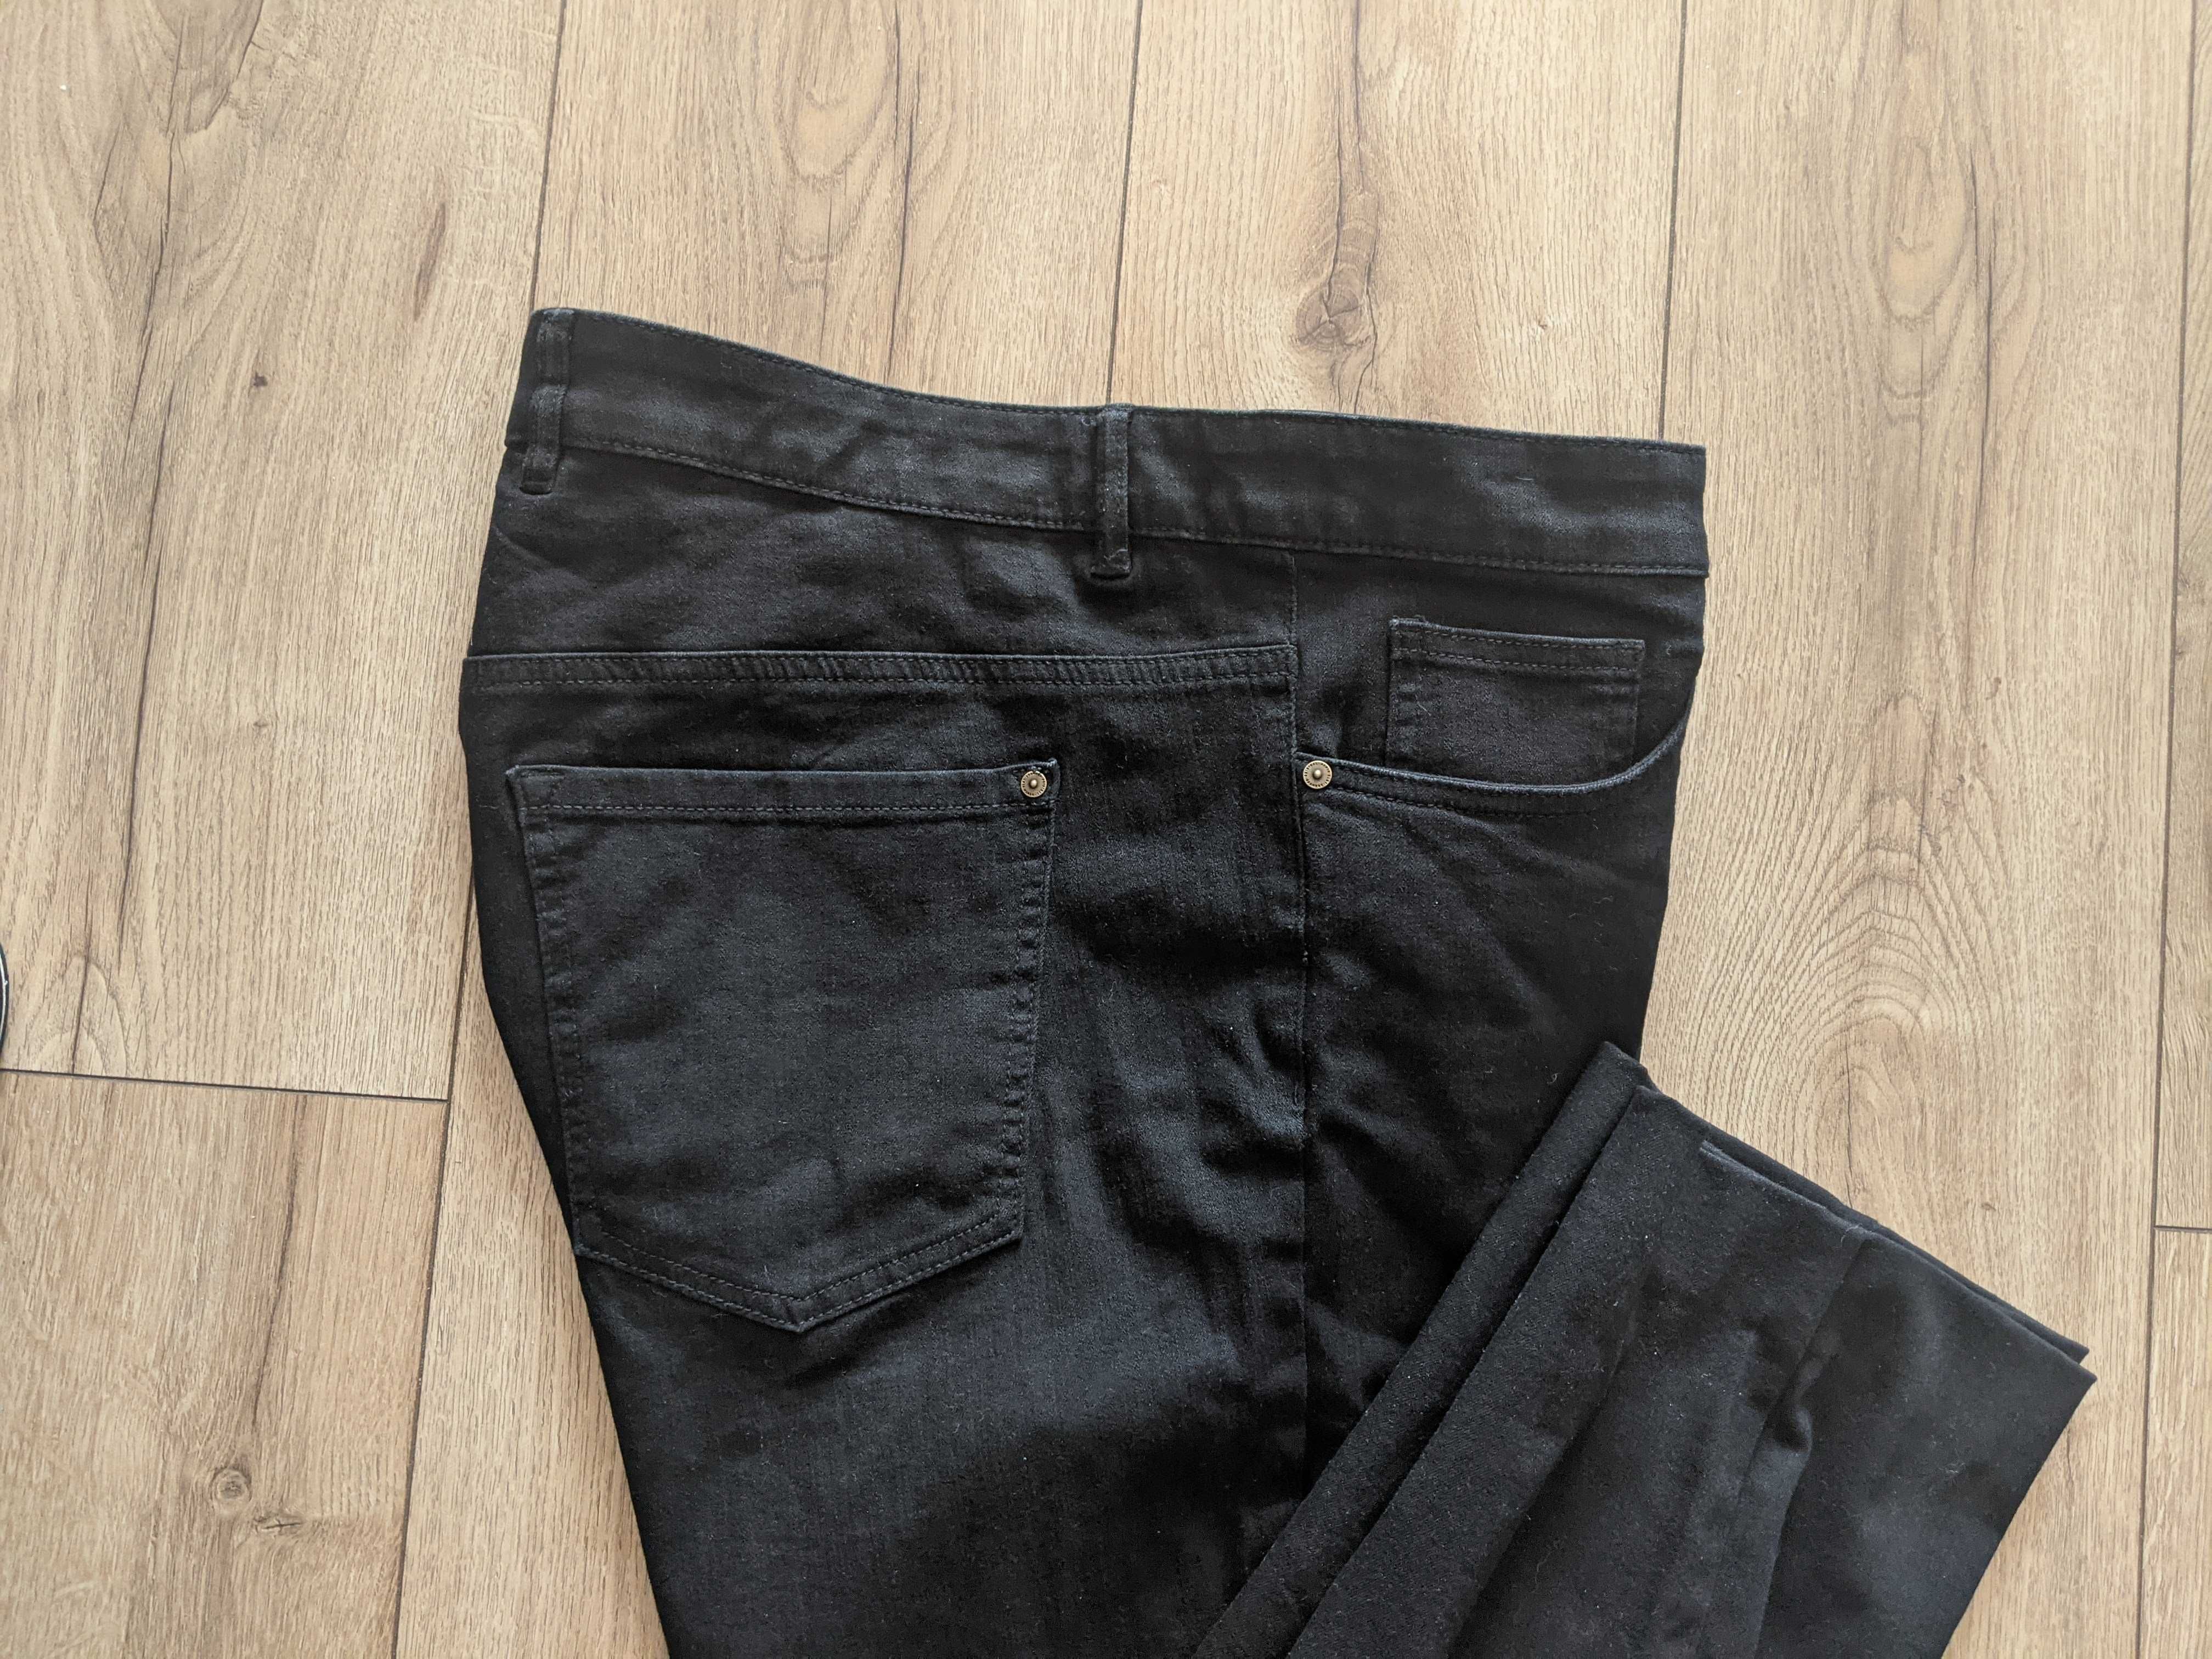 Spodnie męskie 42 miękki elastyczny jeans 3XL jNowe pas106